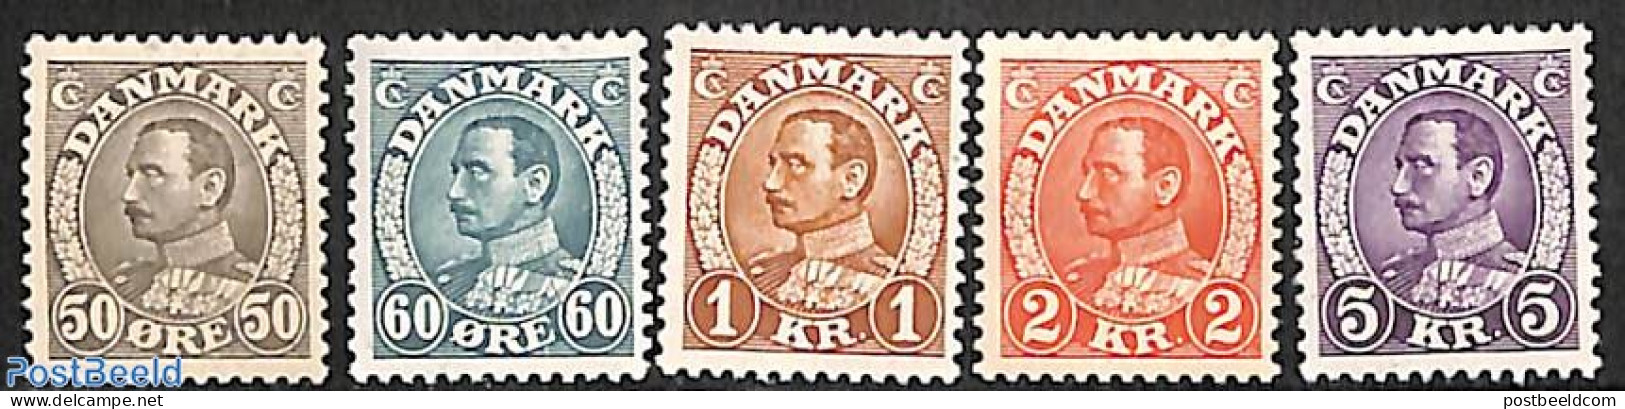 Denmark 1934 Definitives 5v, Mint NH - Ongebruikt